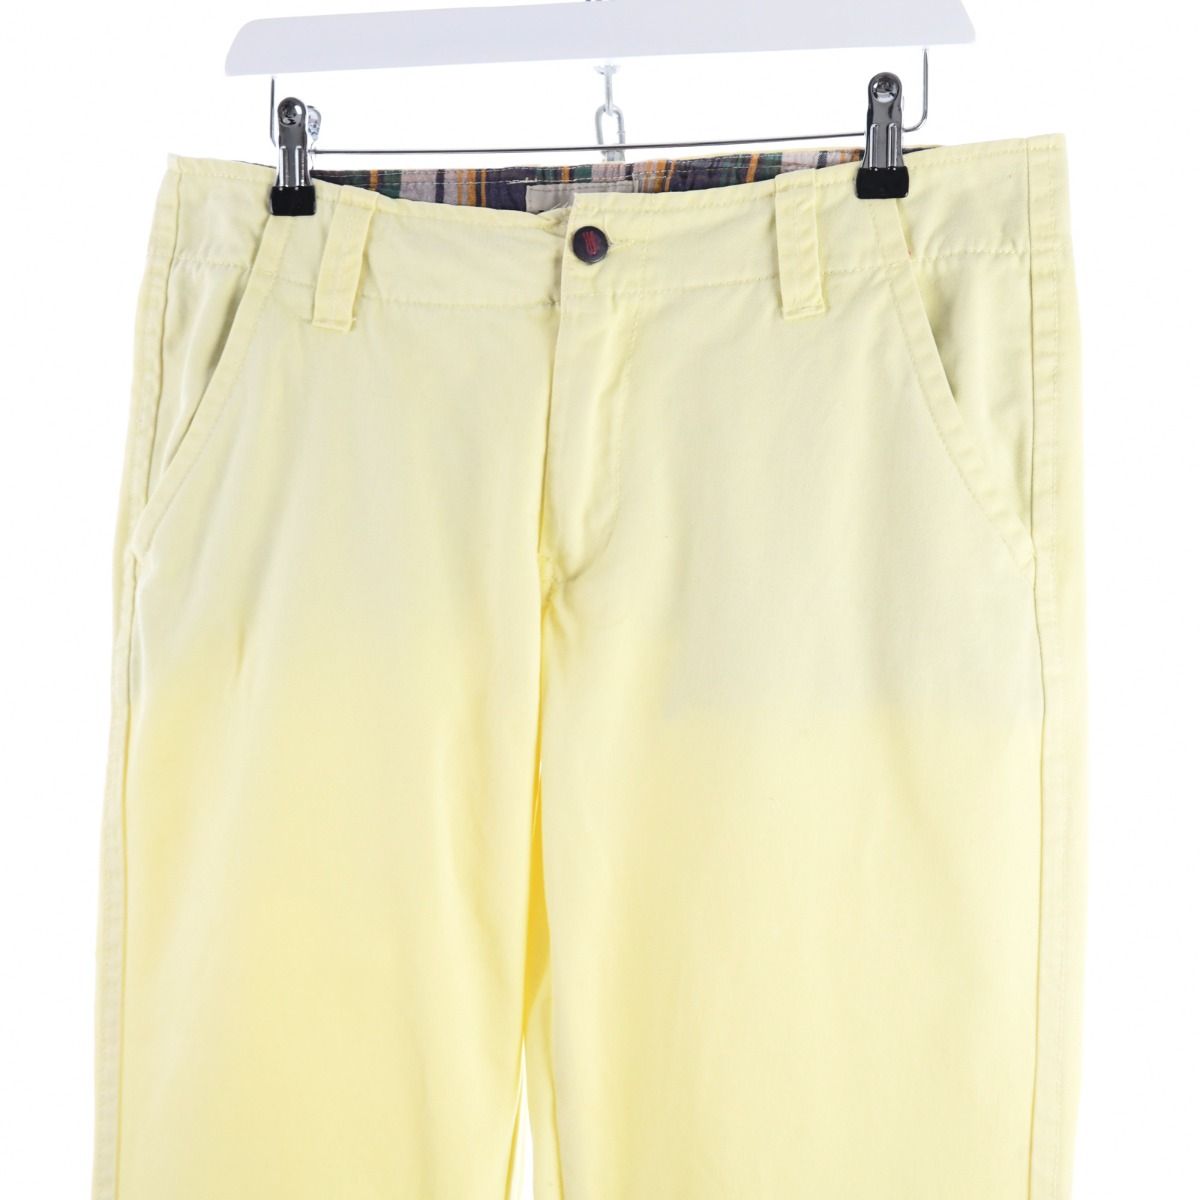 Bruun & Stengade Yellow Chino Trousers